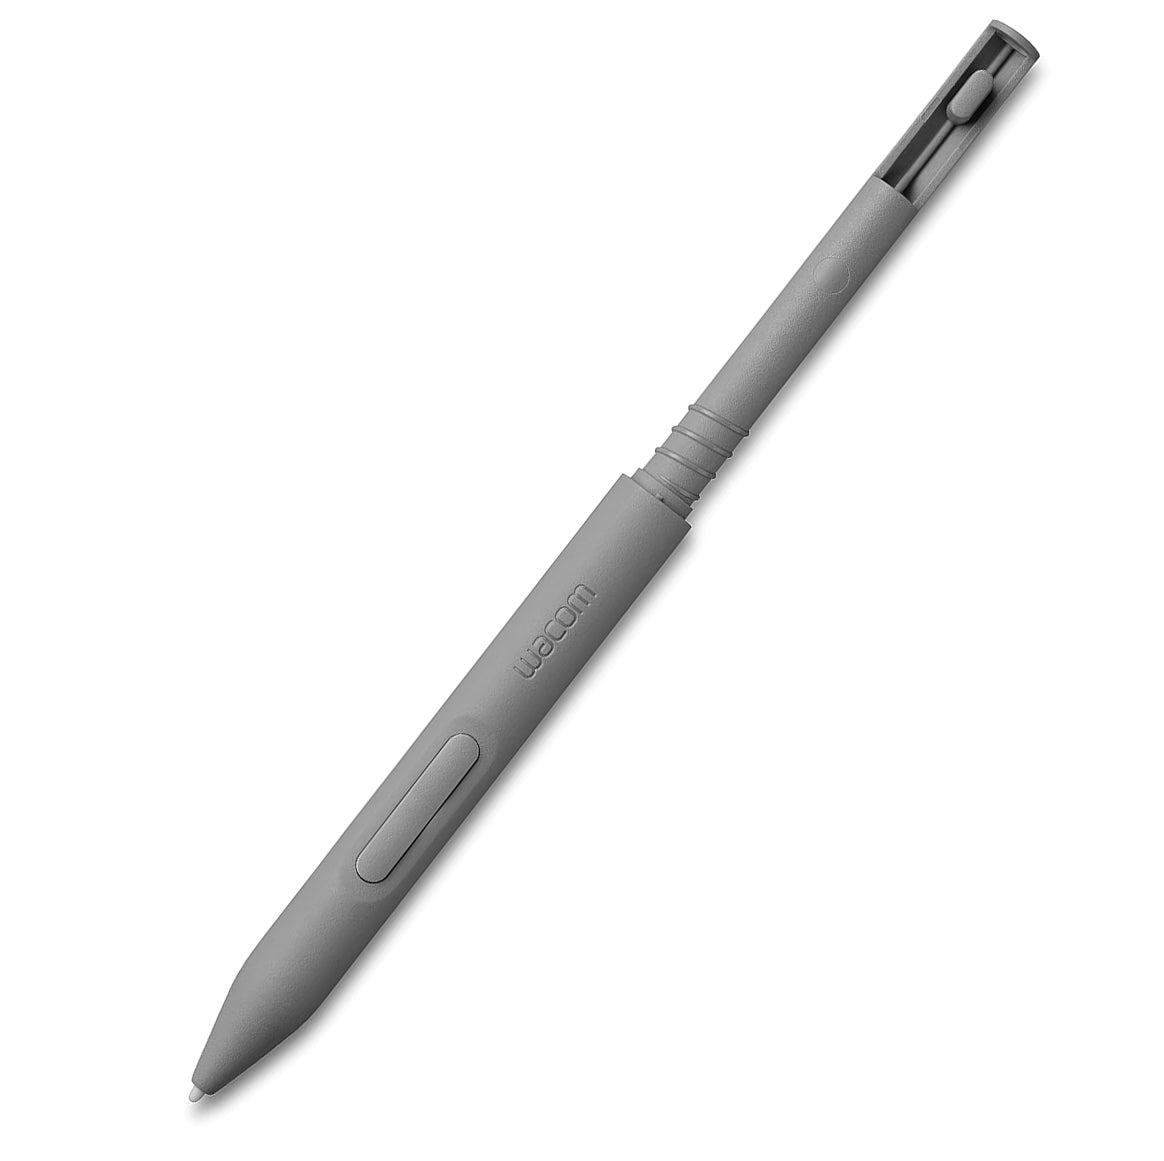 Wacom One Modular Pen - EMR/WACOM E-Note 2023